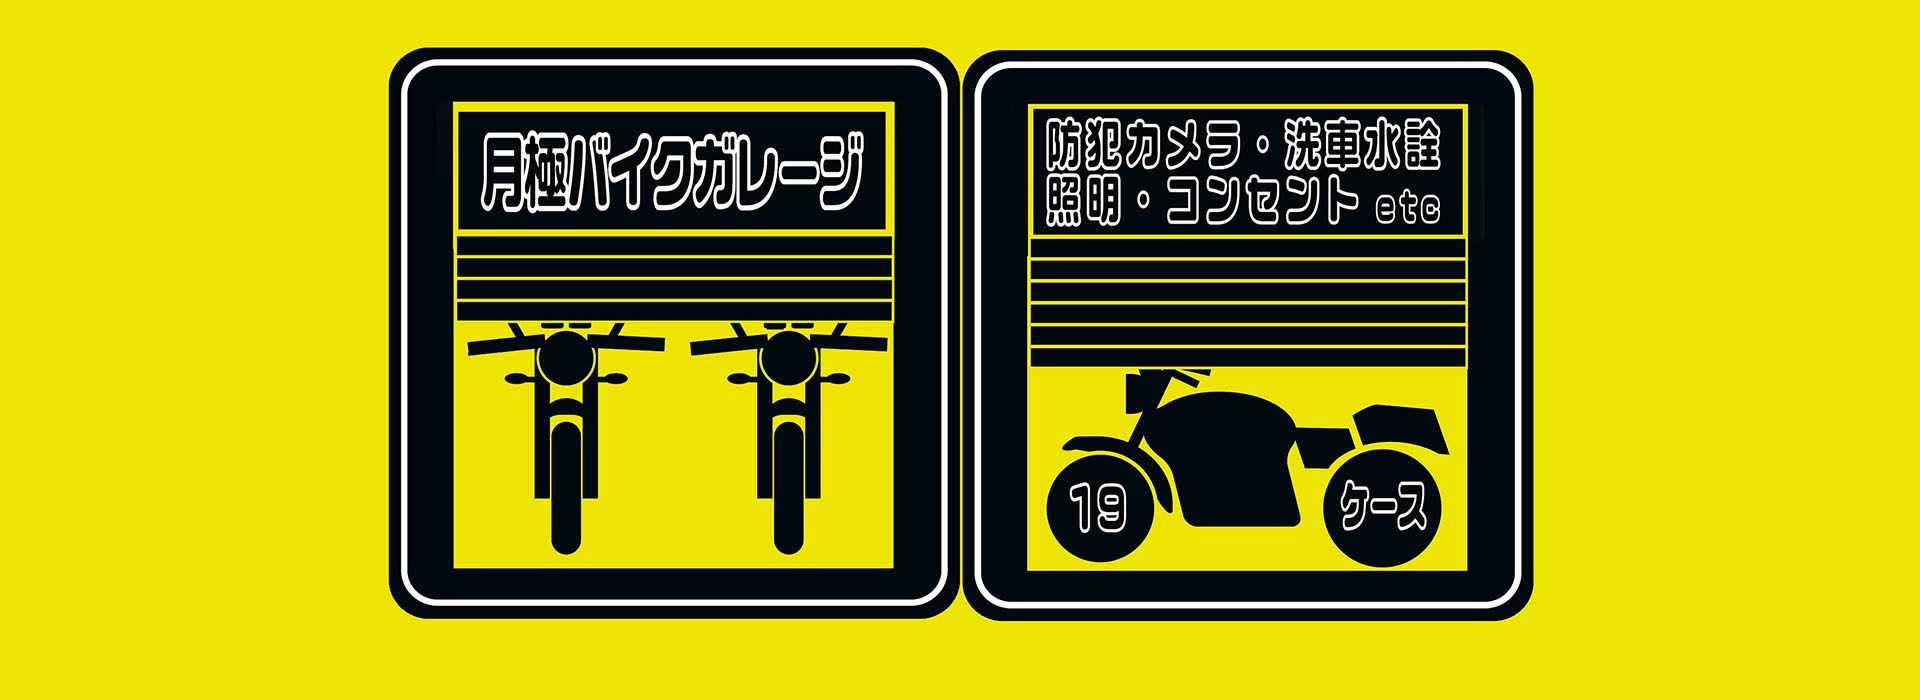 バイクガレージ | 長野クリエート